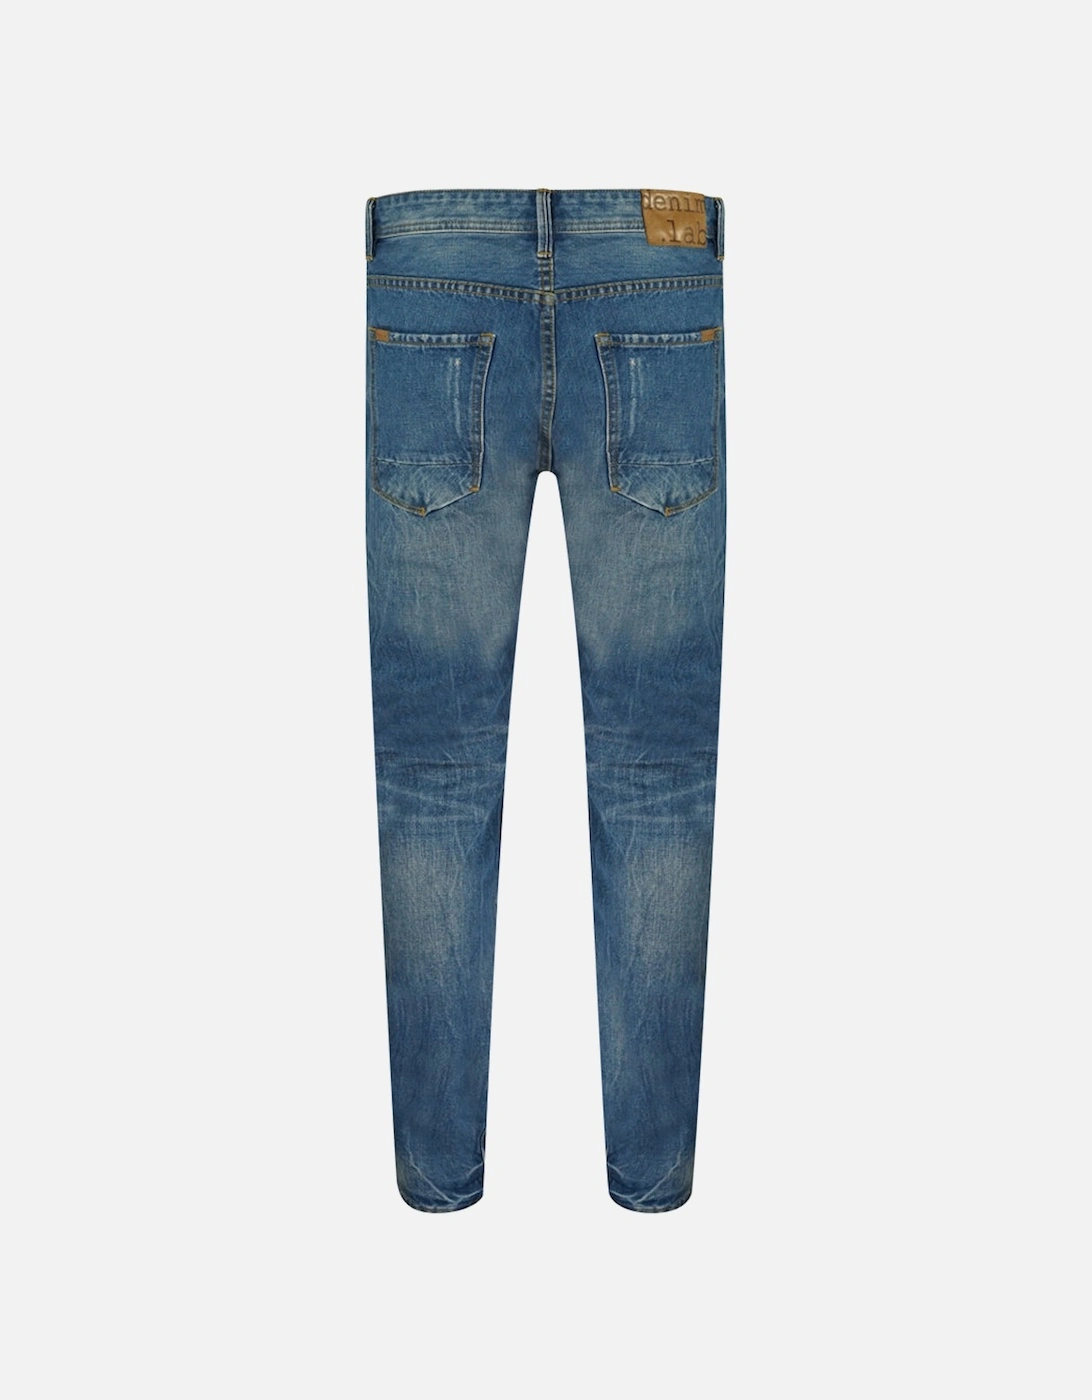 M5 Blue Jeans